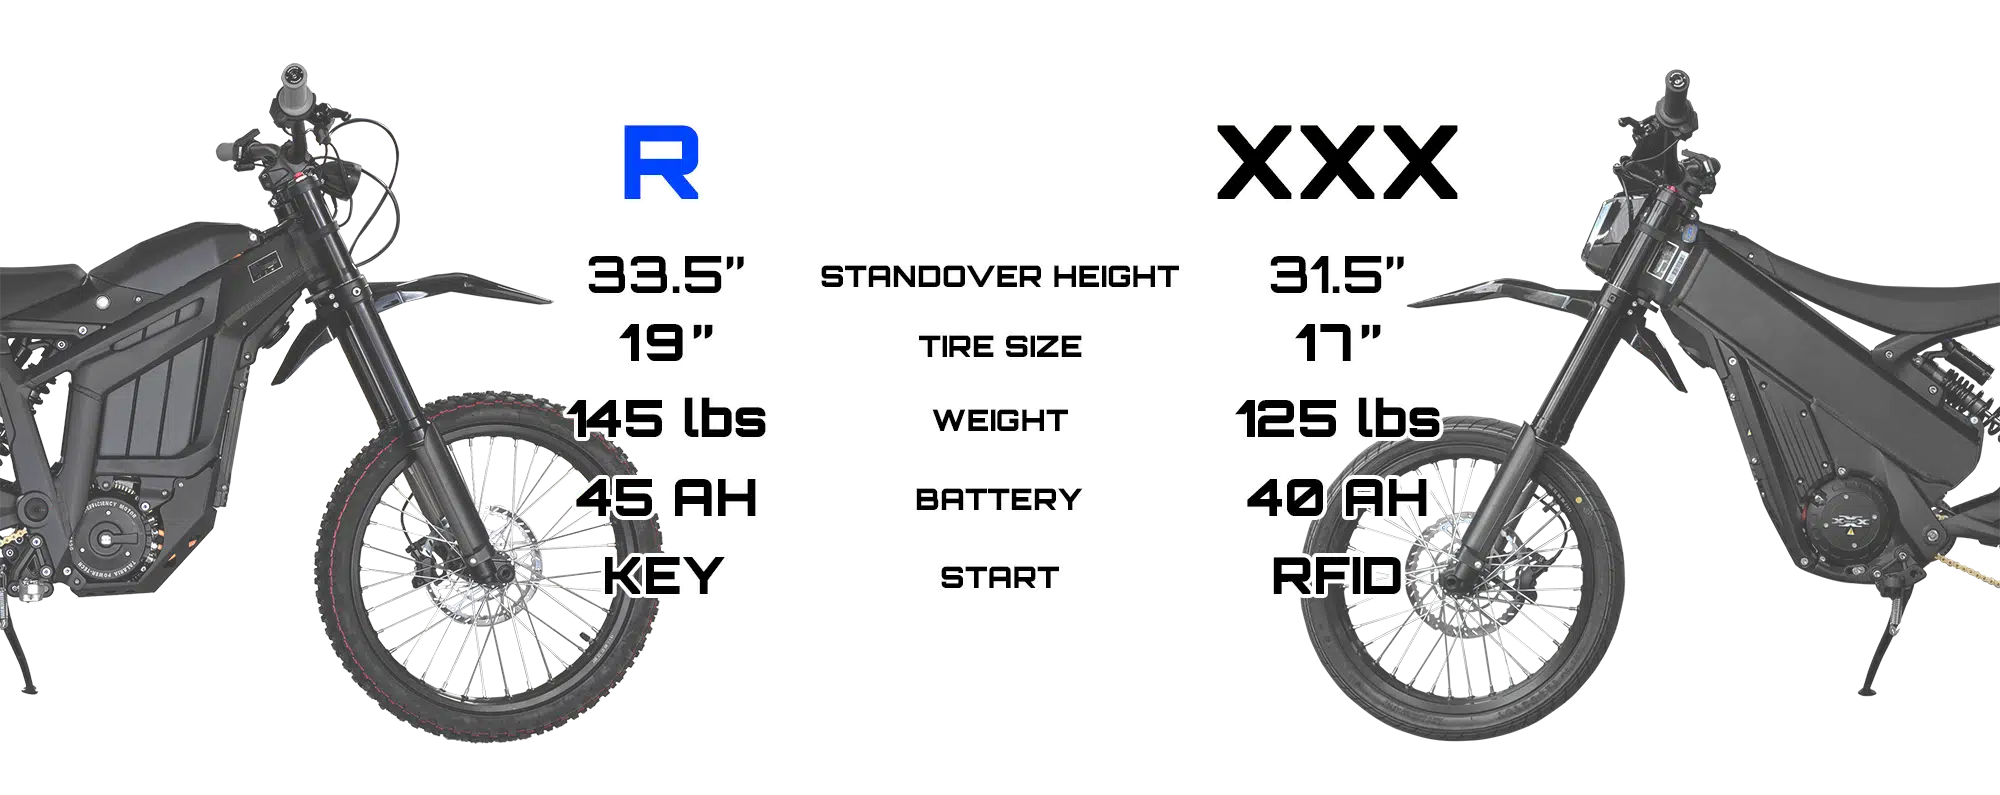 mx4 vs xxx resized 3